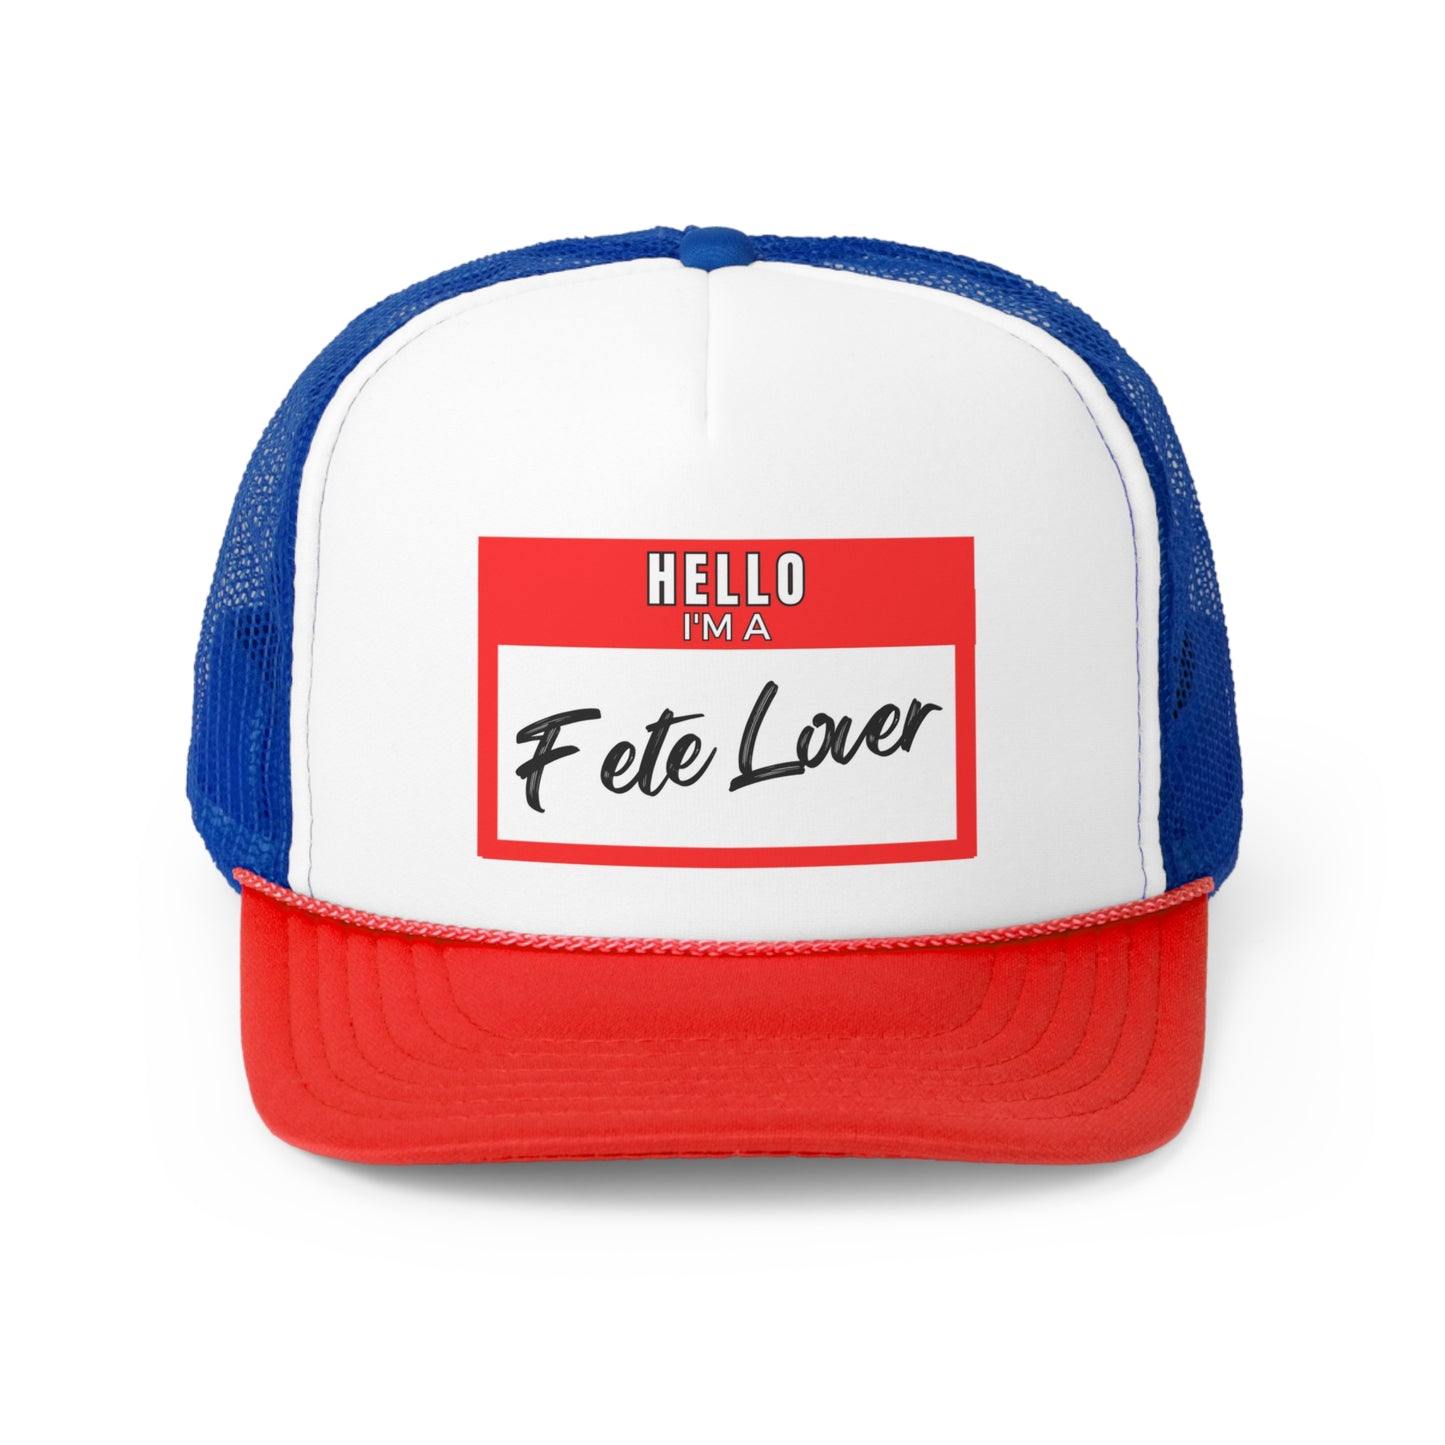 Fete Lover Trucker Caps